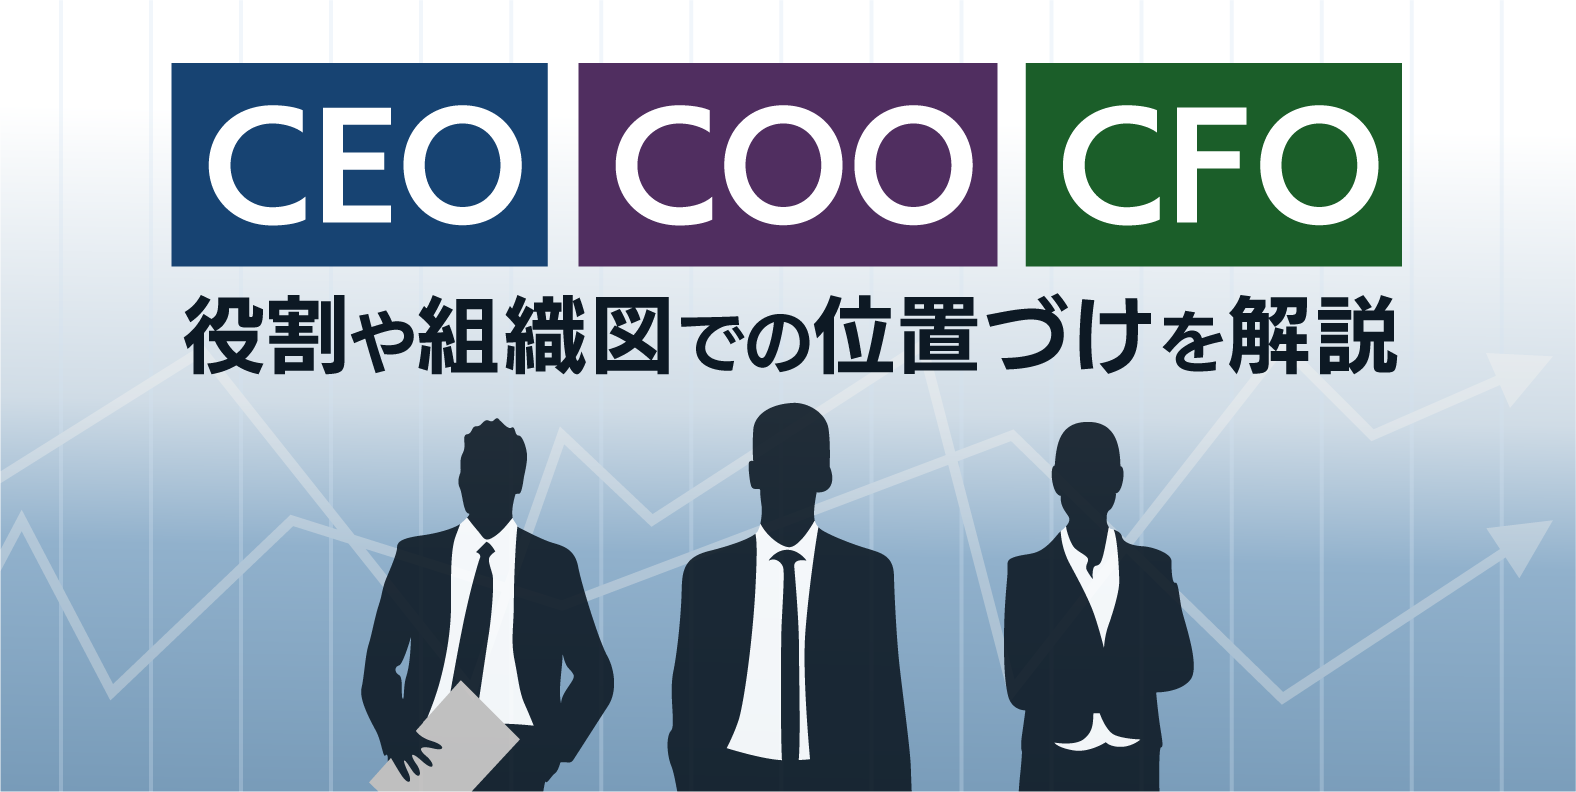 CEO・COO・CFOの役割や組織図での位置づけを解説！知っておくべき役職もご紹介